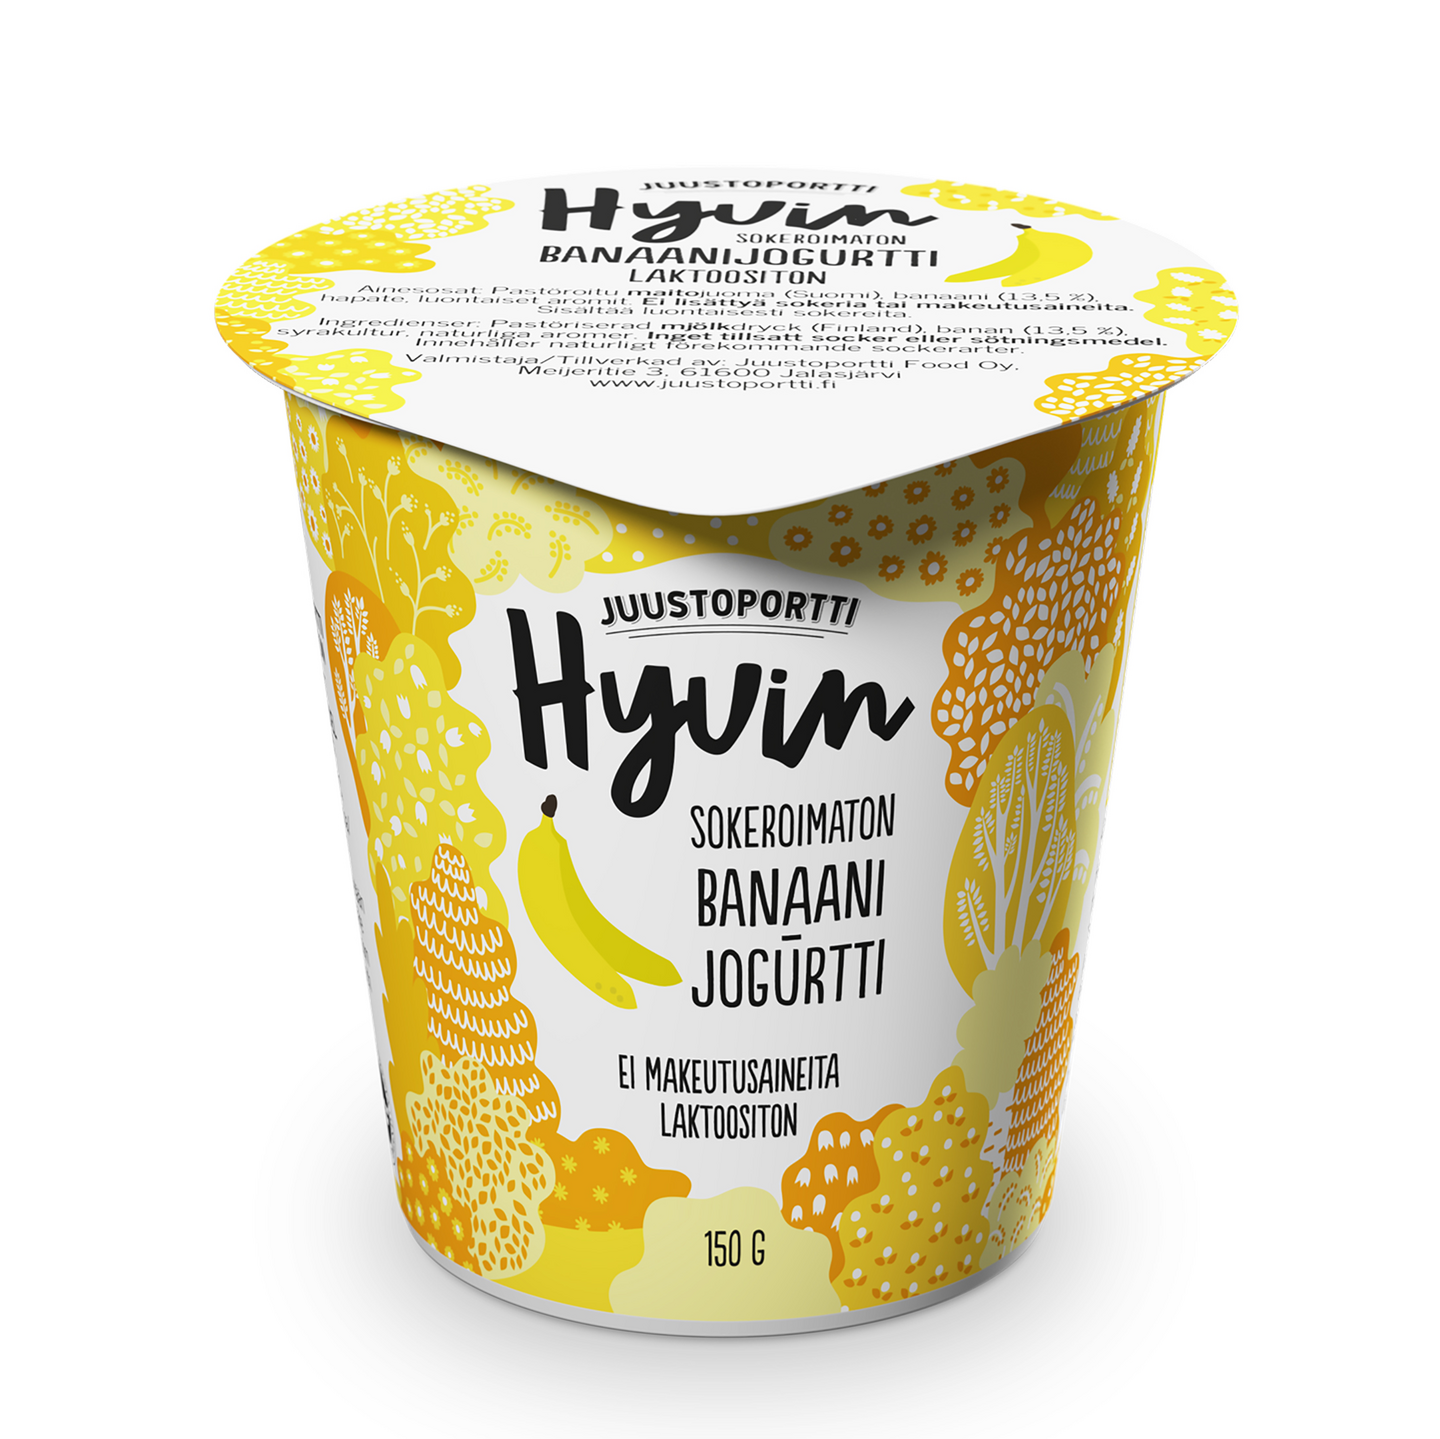 Juustoportti Hyvin sokeroimaton jogurtti 150g banaani laktoositon